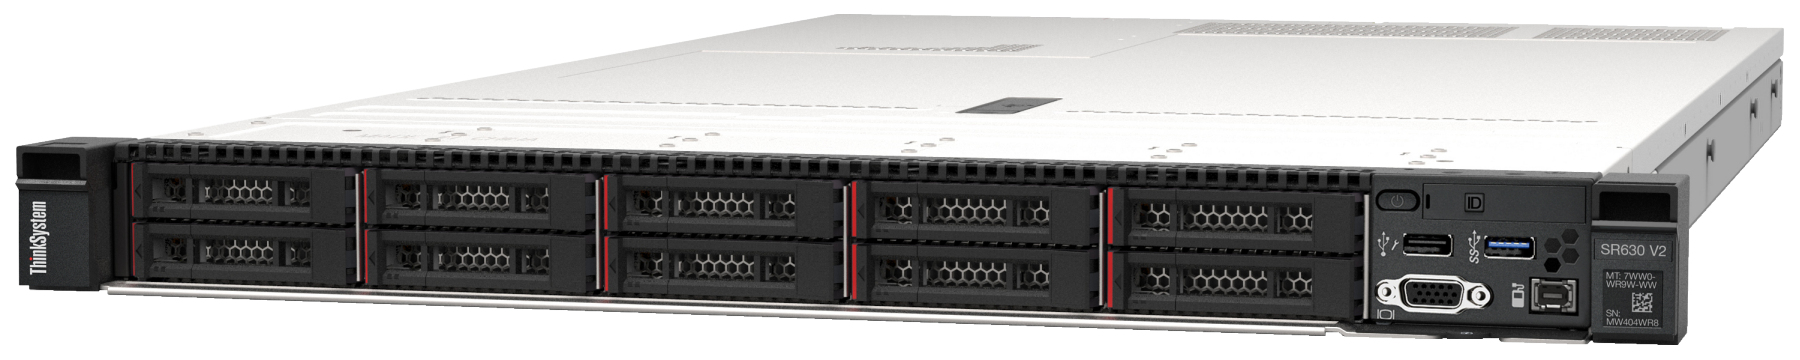 Сервер Lenovo ThinkSystem SR630 V2 (7Z71A04ZEA). Фиксированная комплектация сервера